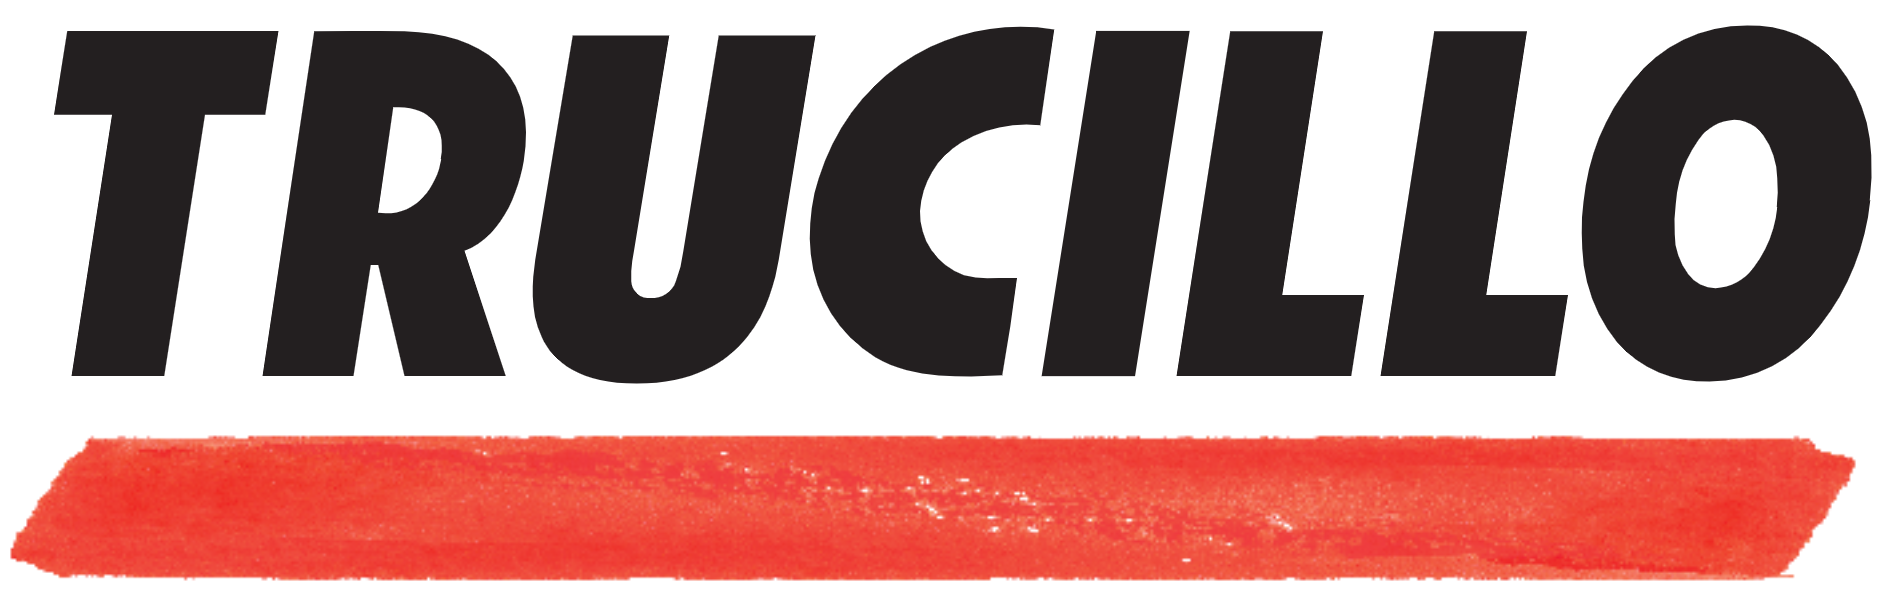 TRUCILLO logo